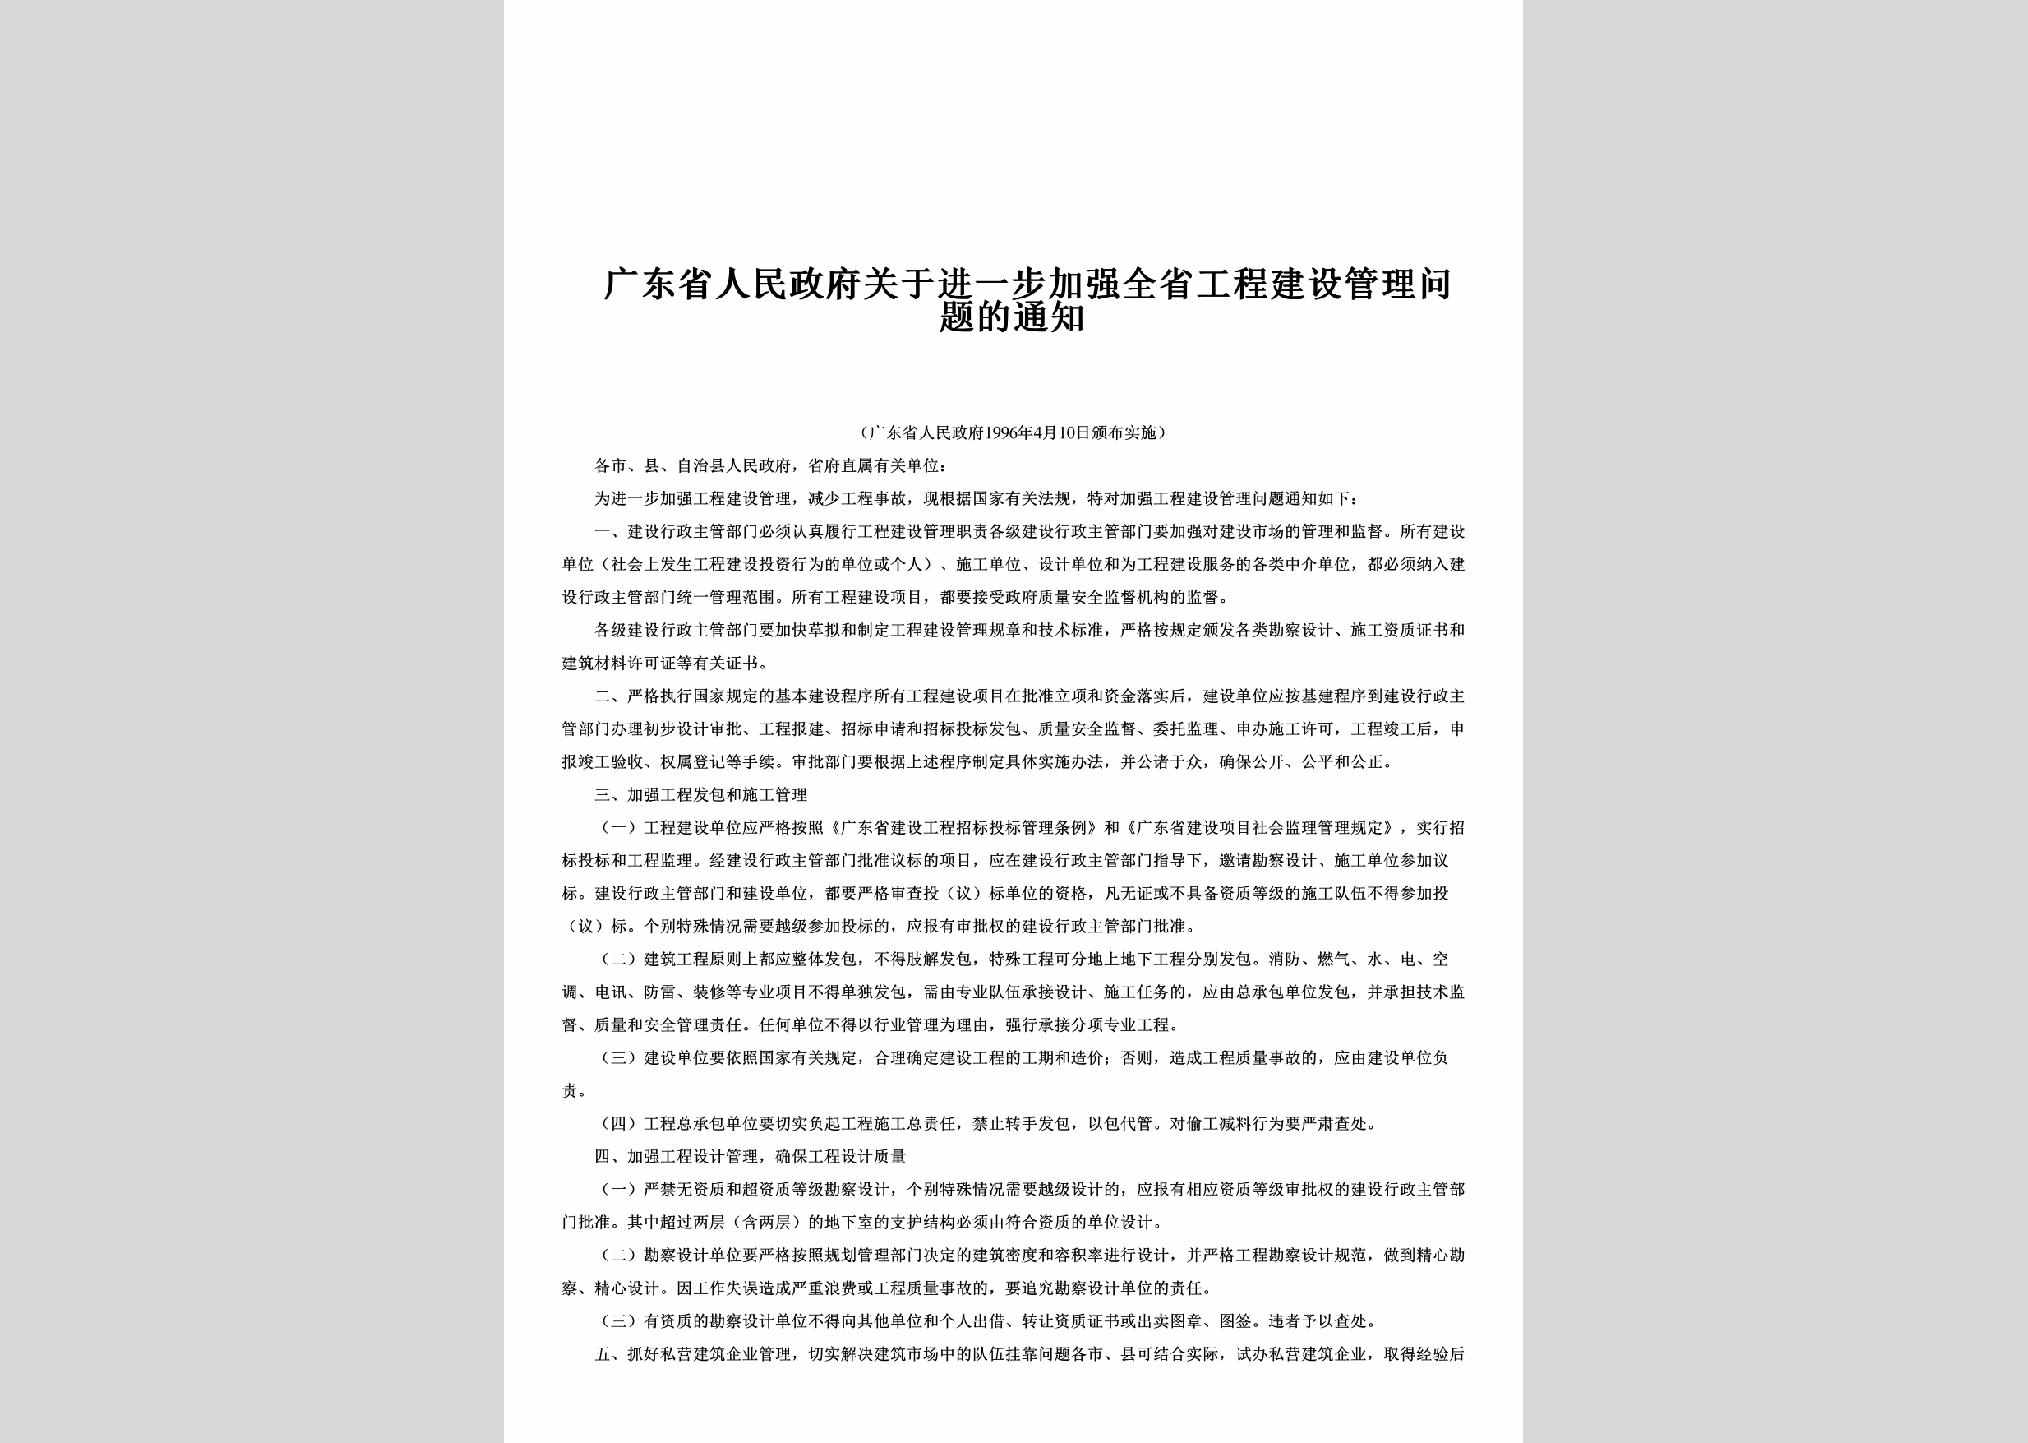 GD-RMZFGYJY-1996：广东省人民政府关于进一步加强全省工程建设管理问题的通知